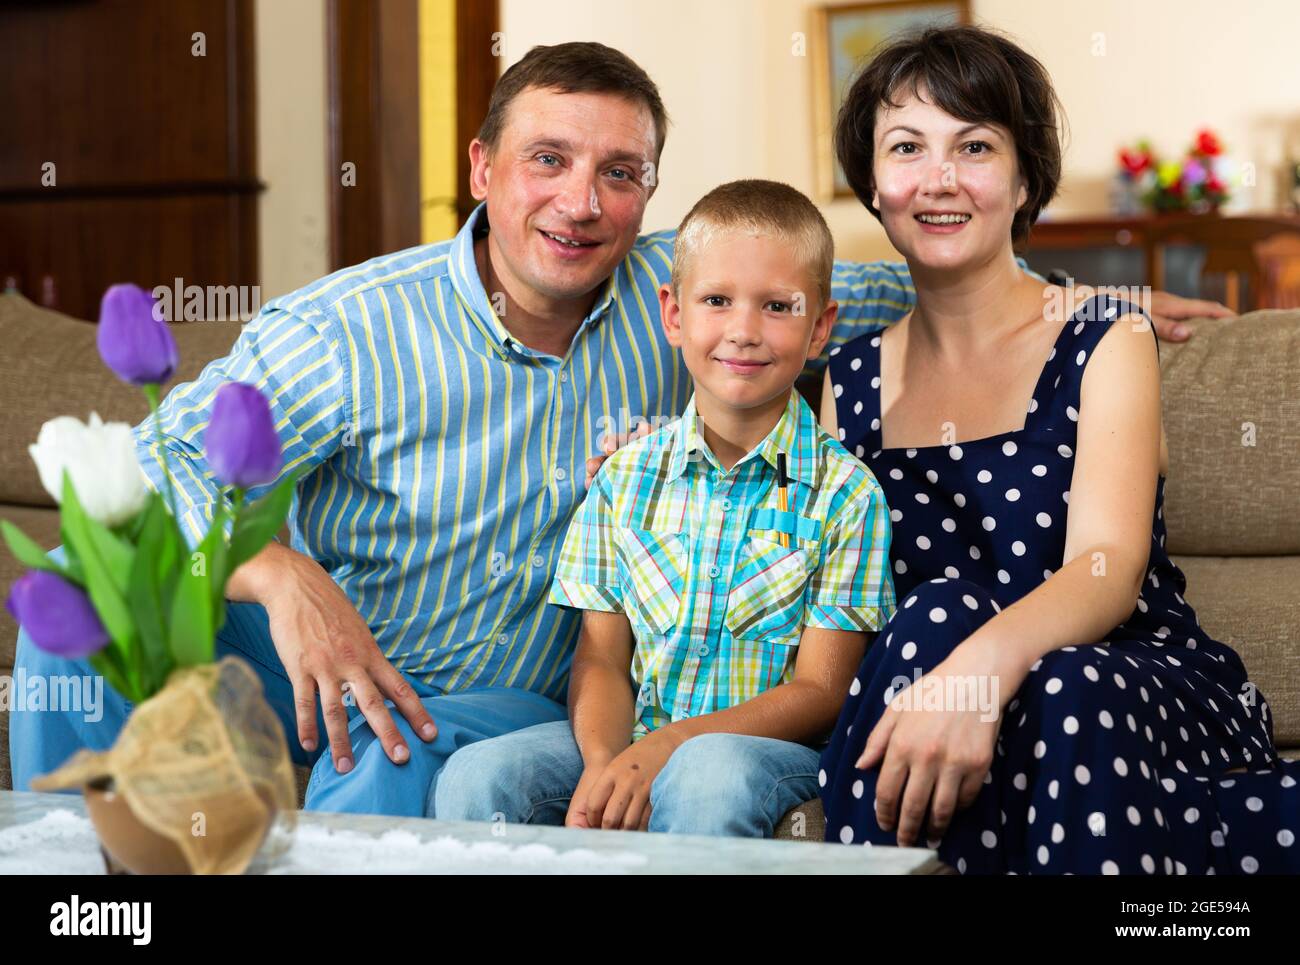 Retrato de familia sonriente en el interior doméstico Foto de stock